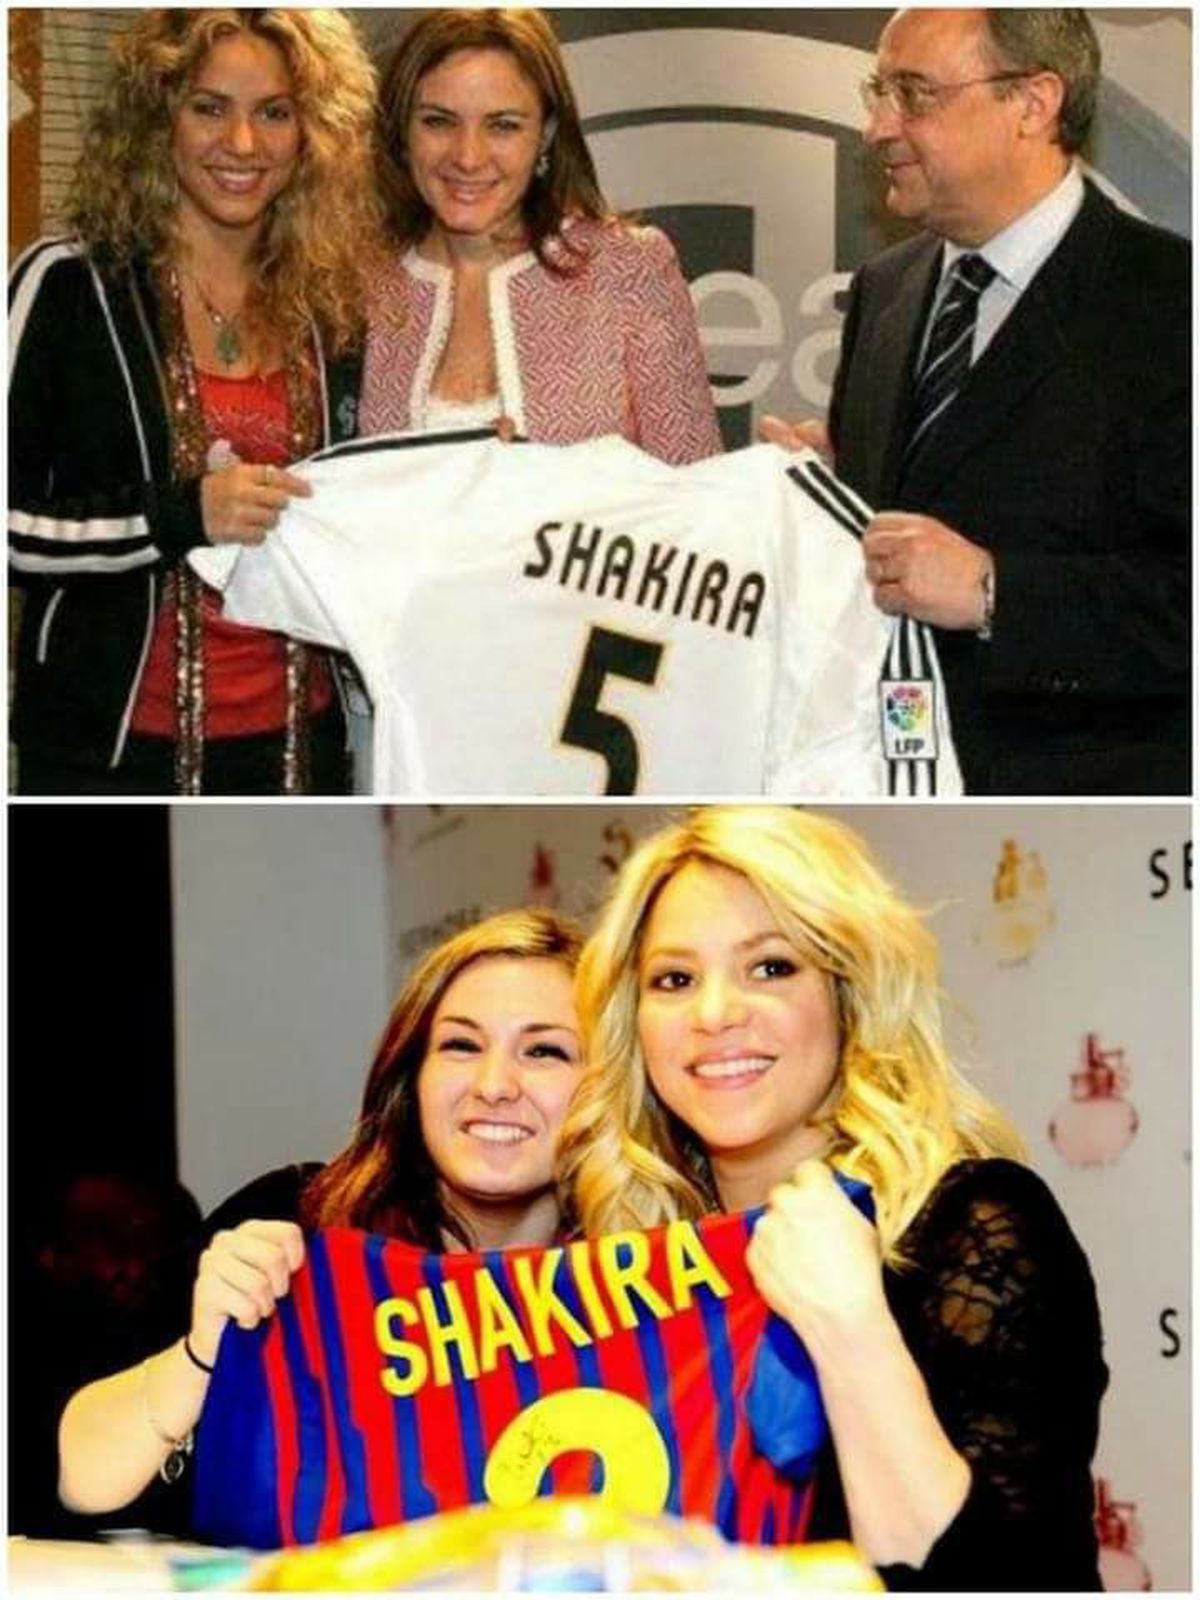 S-a aplanat scandalul! Shakira și Pique au bătut palma